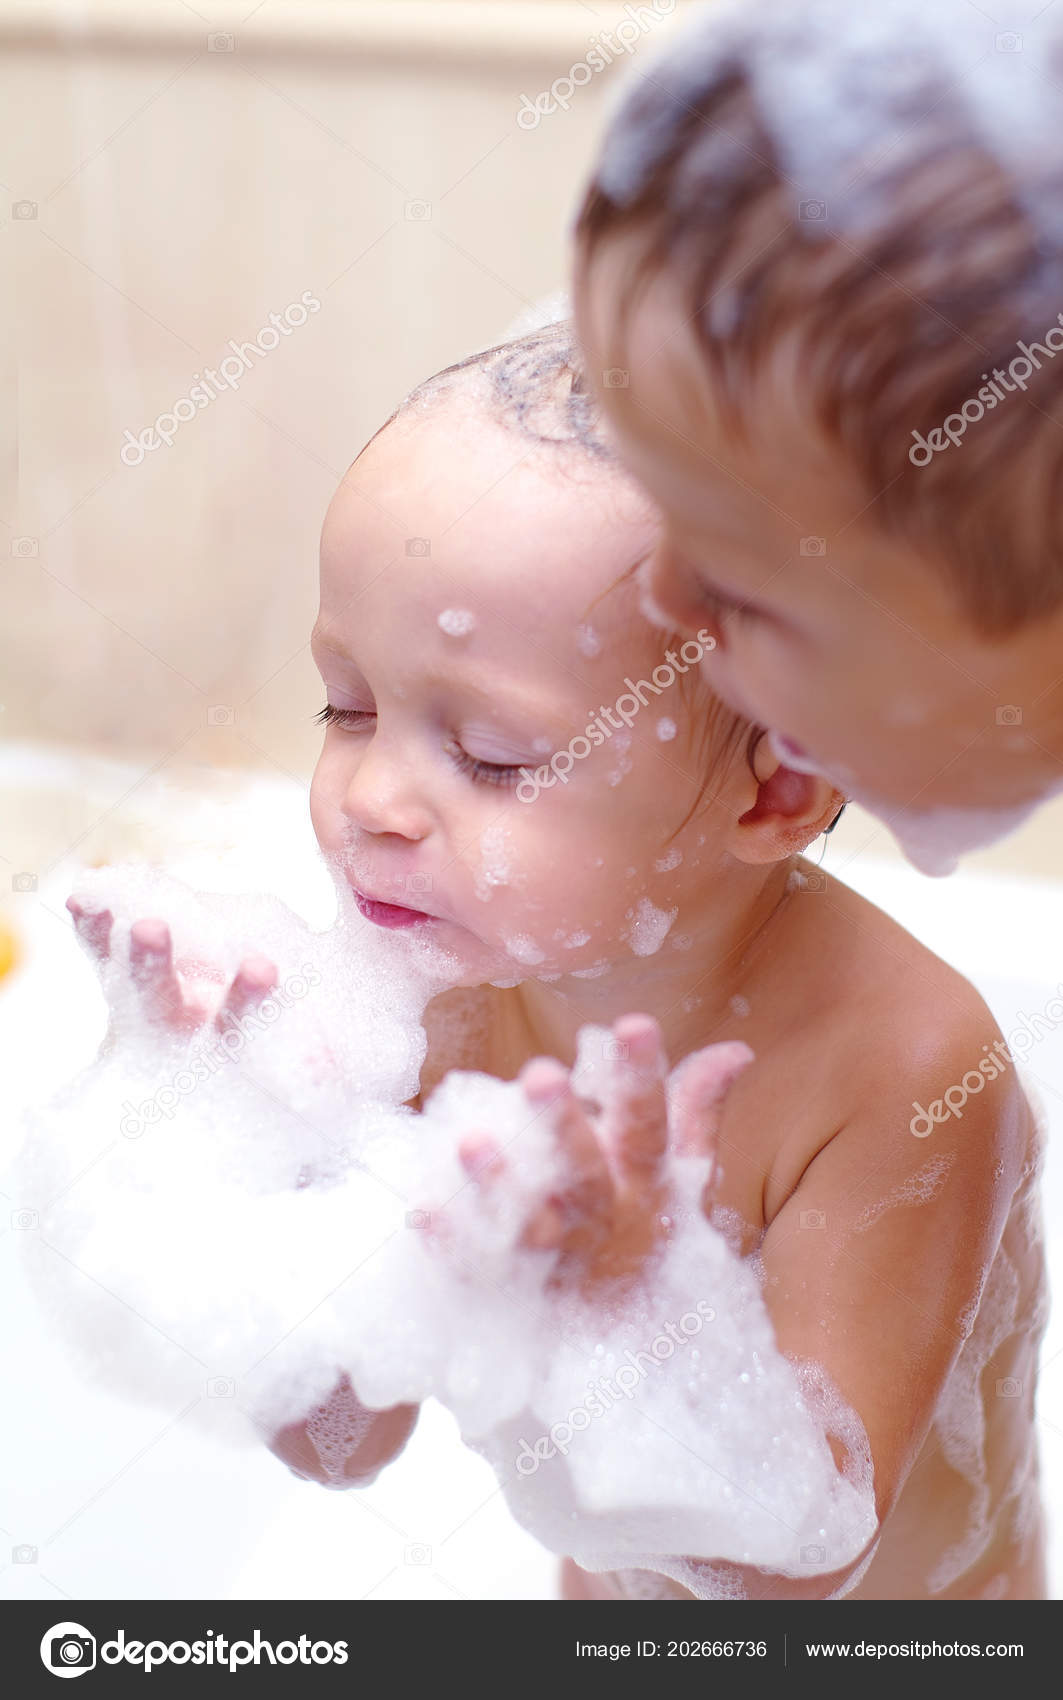 Girls and boys taking baths